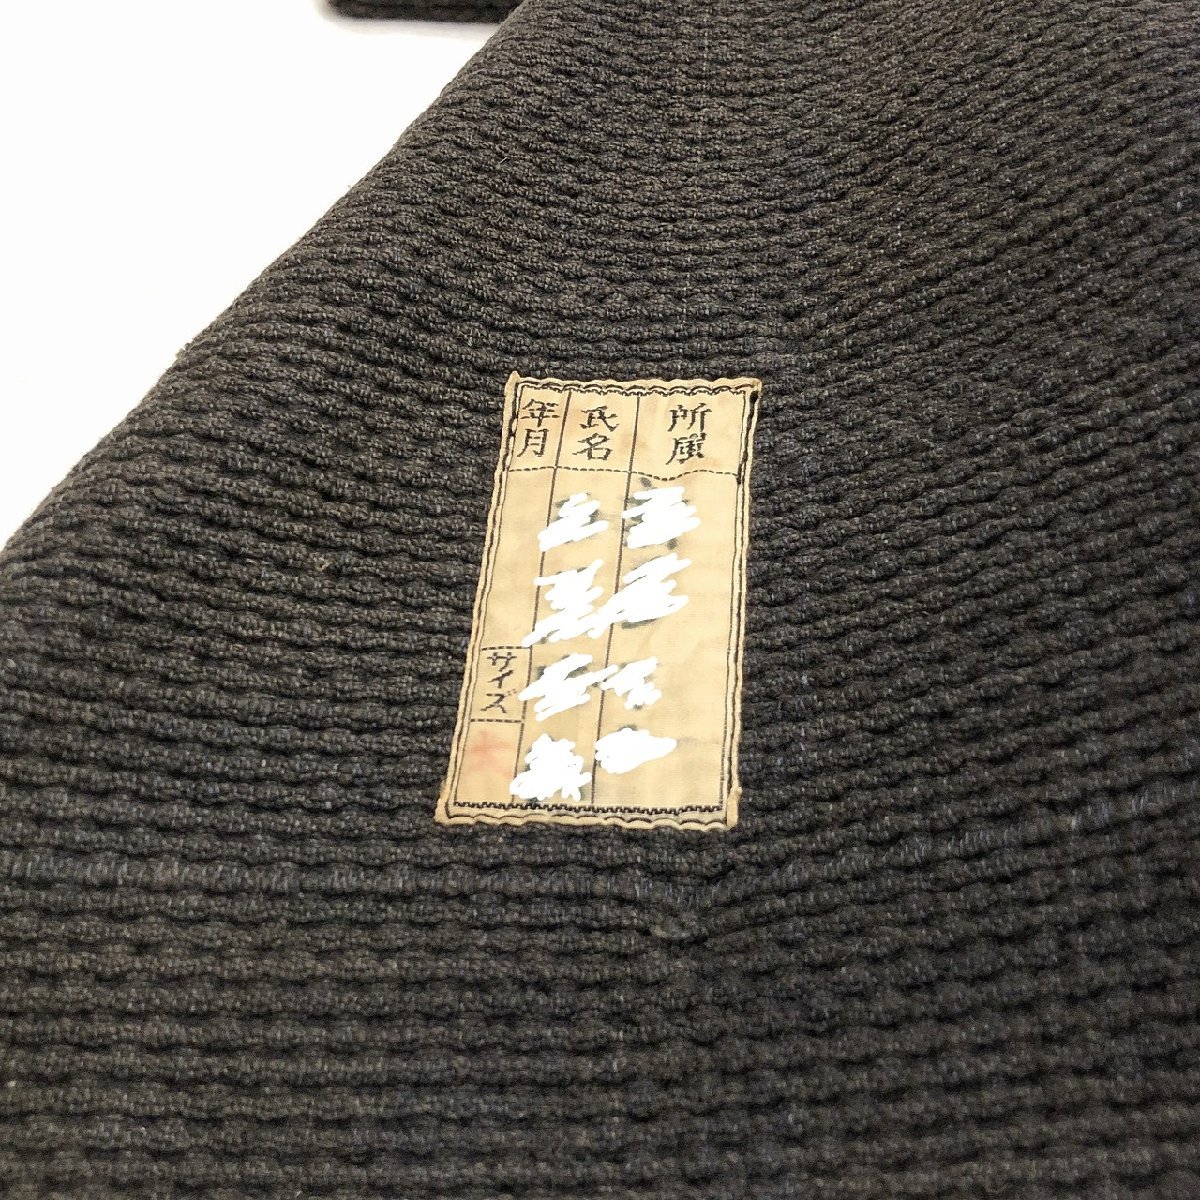 [40*s] VINTAGE / HIKESHI COAT Vintage Япония огонь удаление пожаротушение одежда вне .... Showa первый период retro внешний пальто указанный размер ( большой ) @K